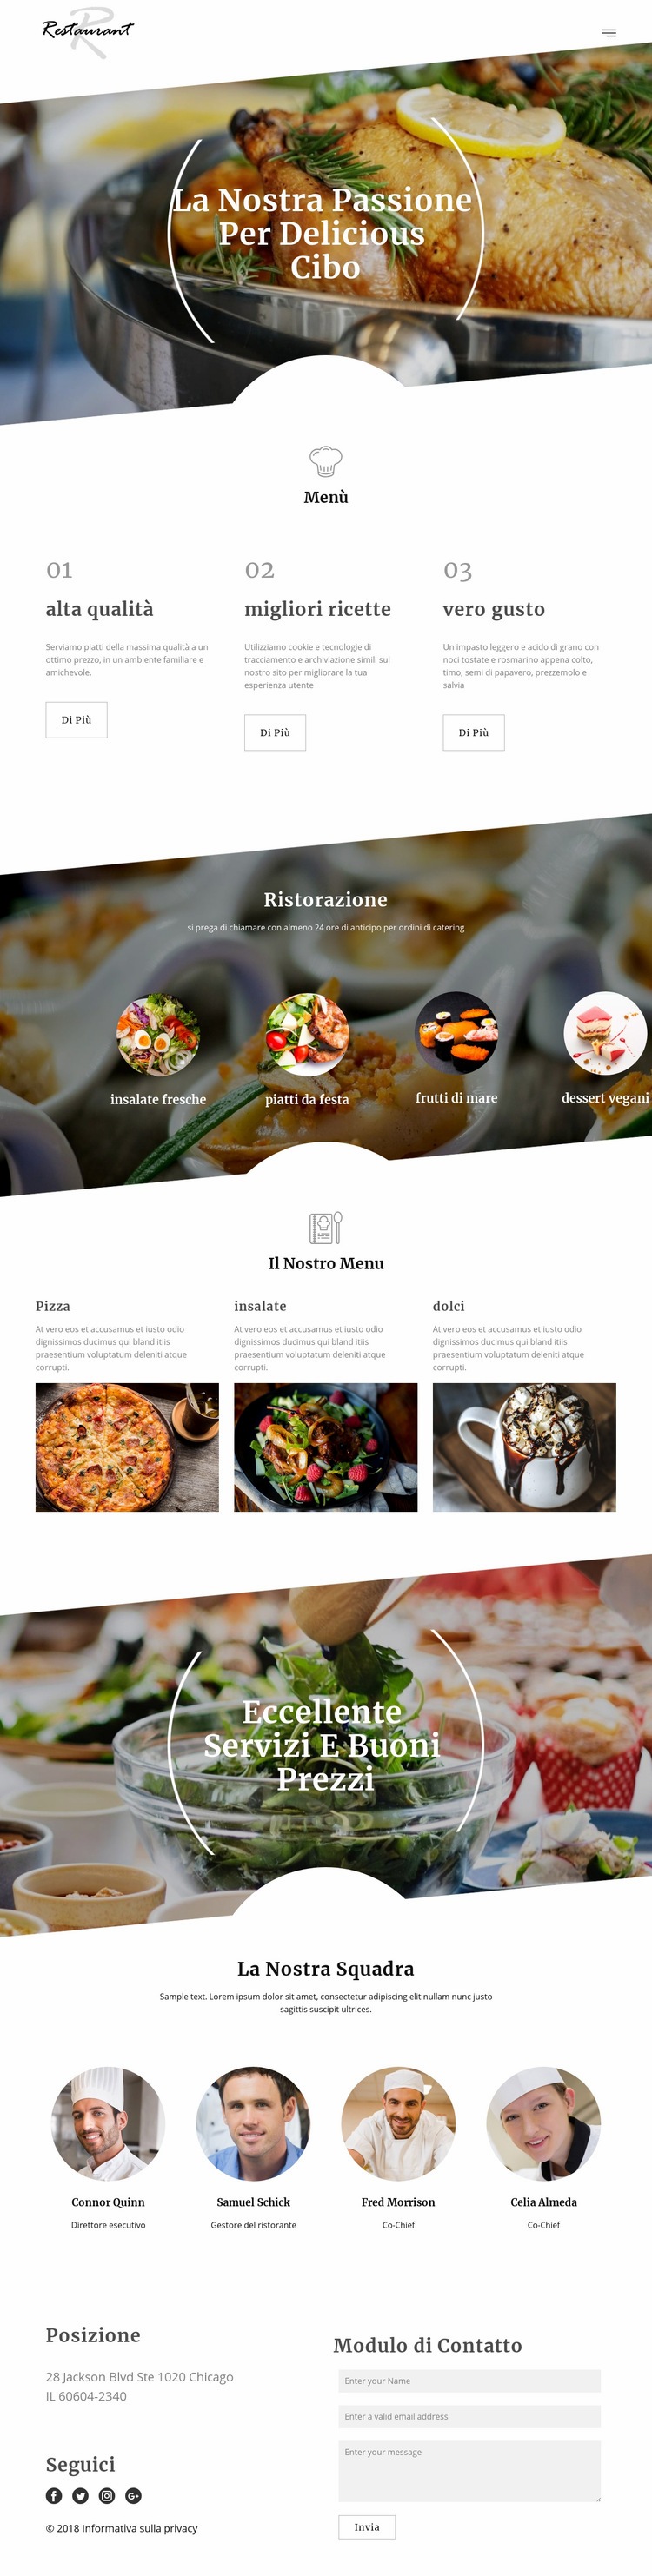 Ricette dello chef esecutivo Modello HTML5